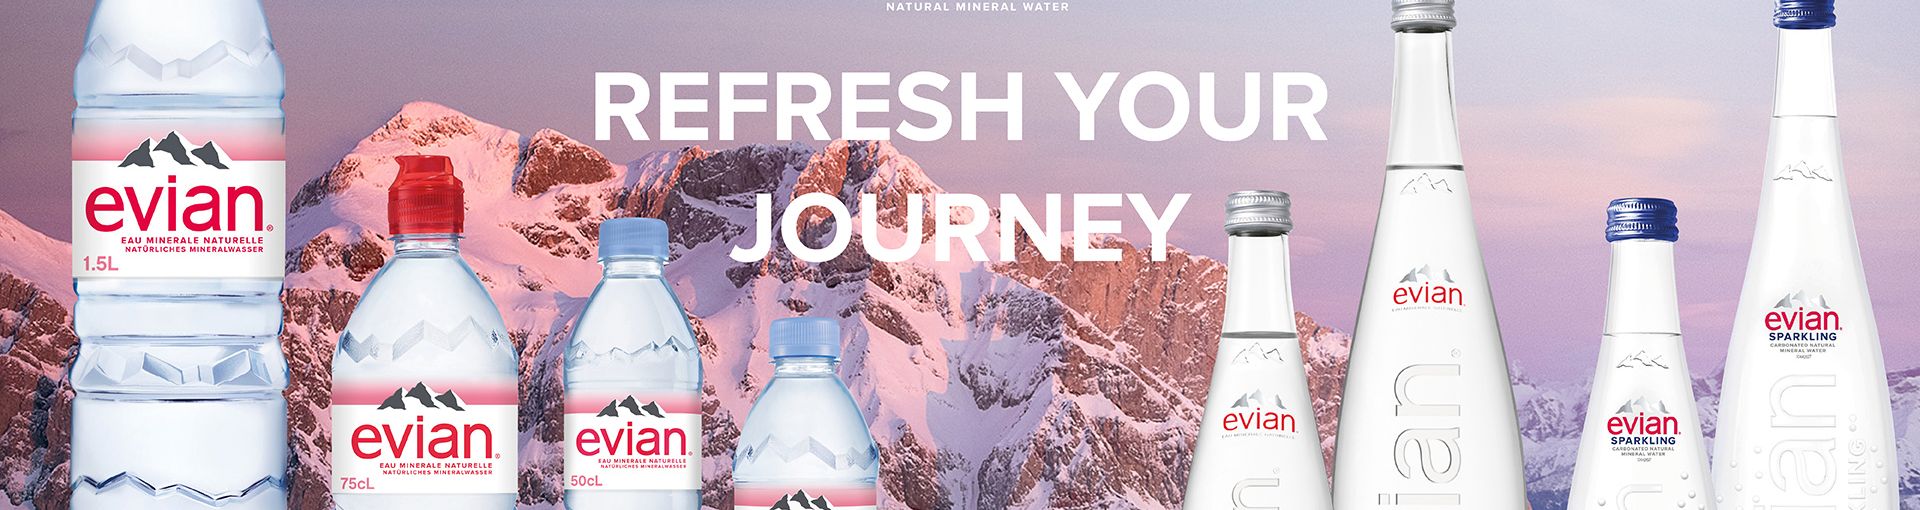 Text "Refresh your journey" mit Evial Plastikflaschen links und Evian Glasflaschen rechts, dahinter ein schneebedeckter Berg im Sonnenuntergang